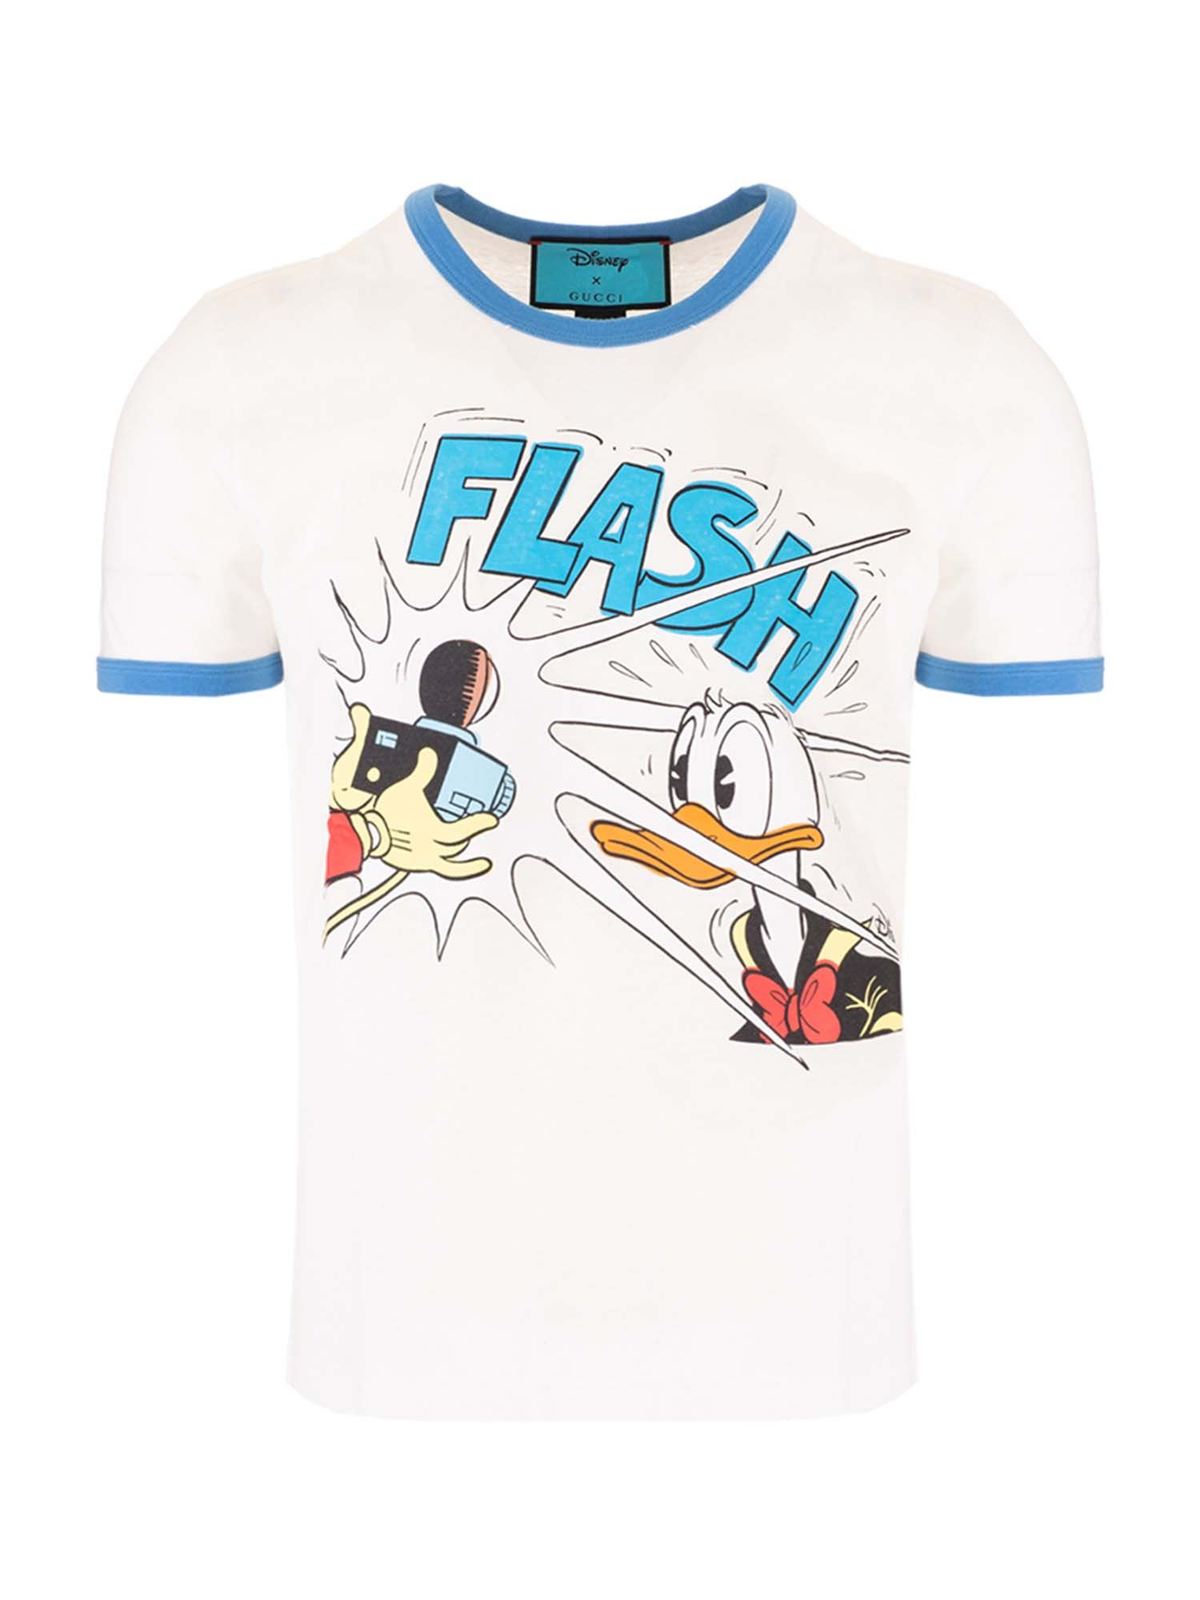 新品 Tシャツ グッチ gucci ドナルド Disney ディズニー トップス T